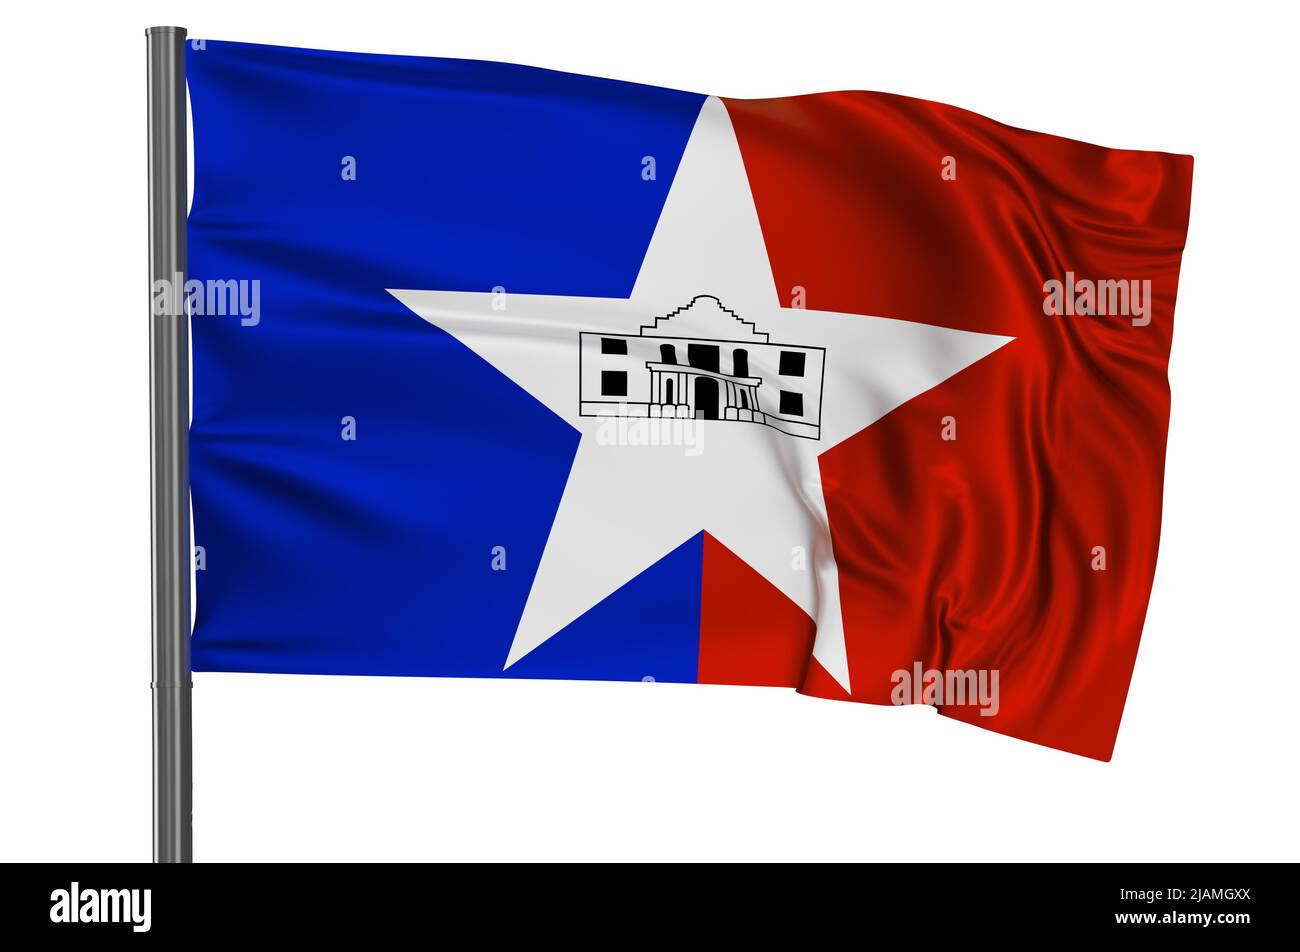 San Antonio, TX Flag